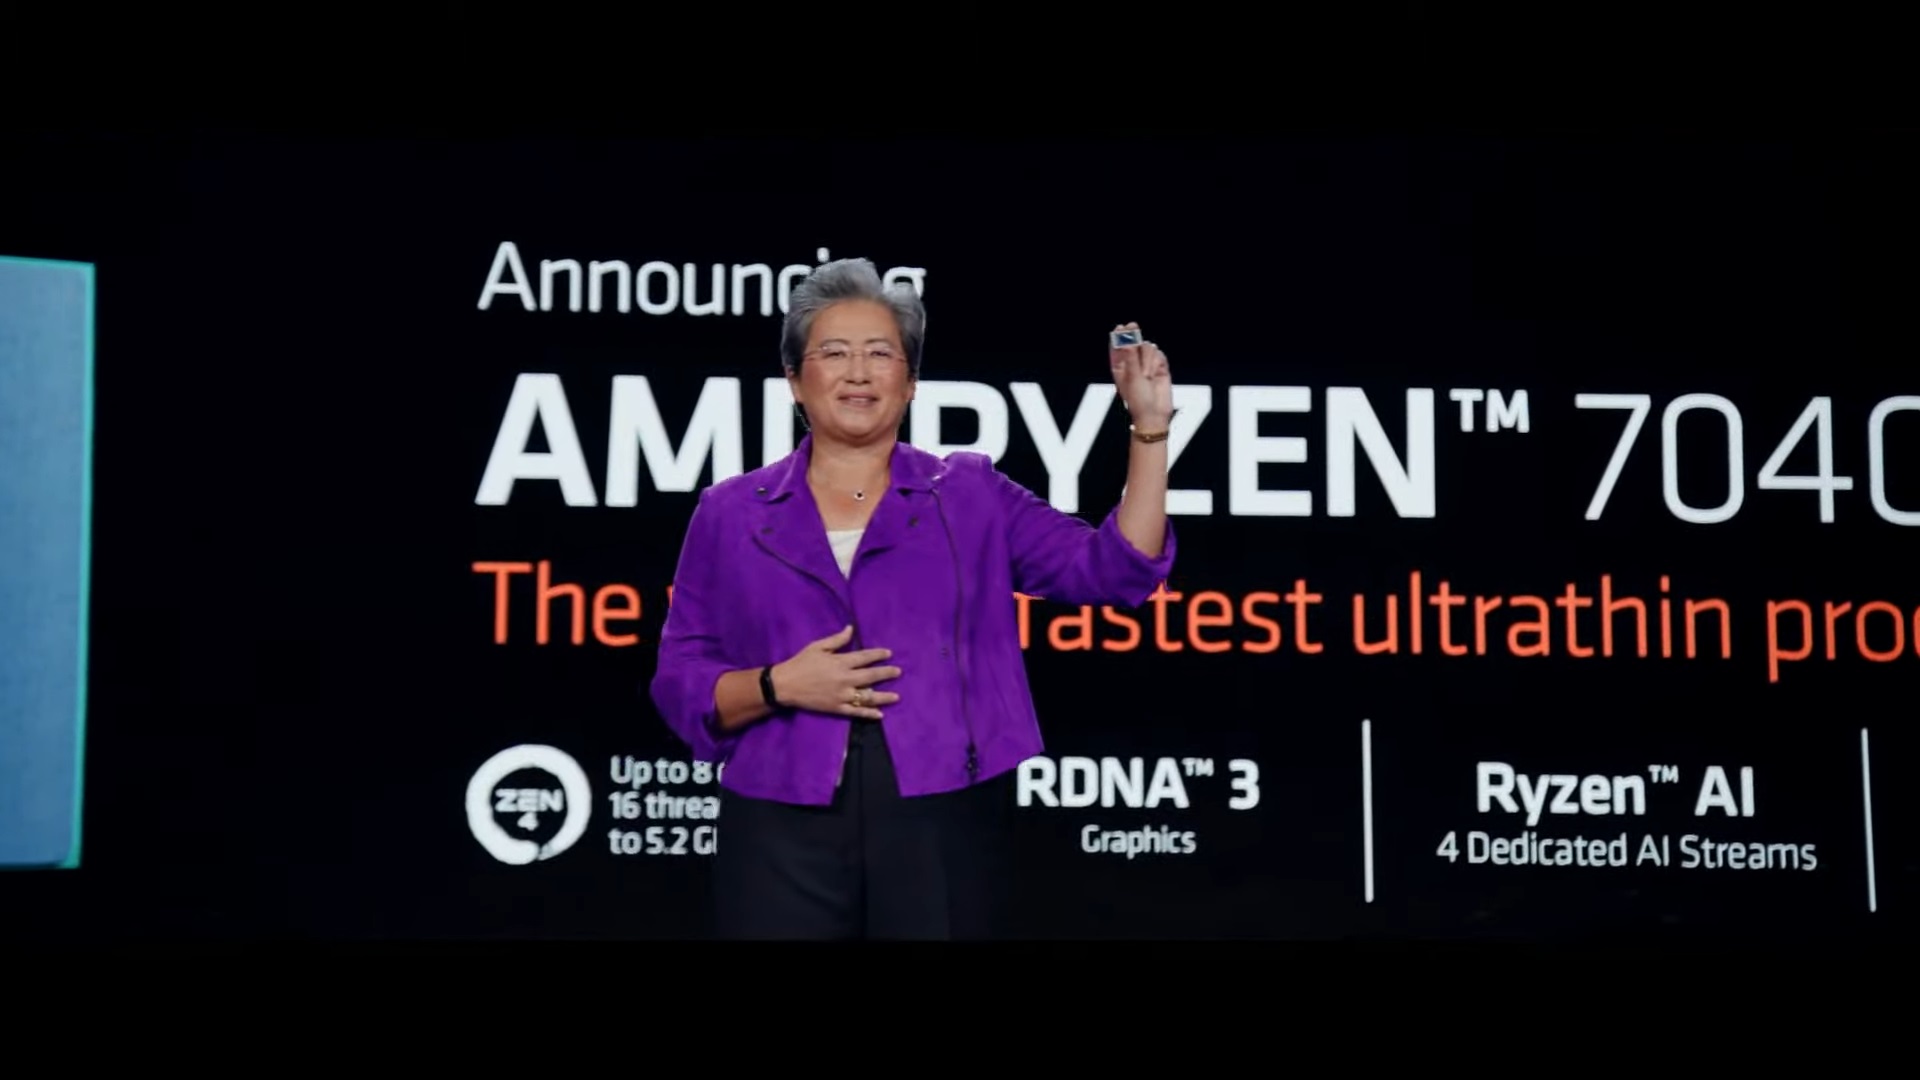 مدیر عامل AMD دارای پردازنده سری Ryzen 7040 است.